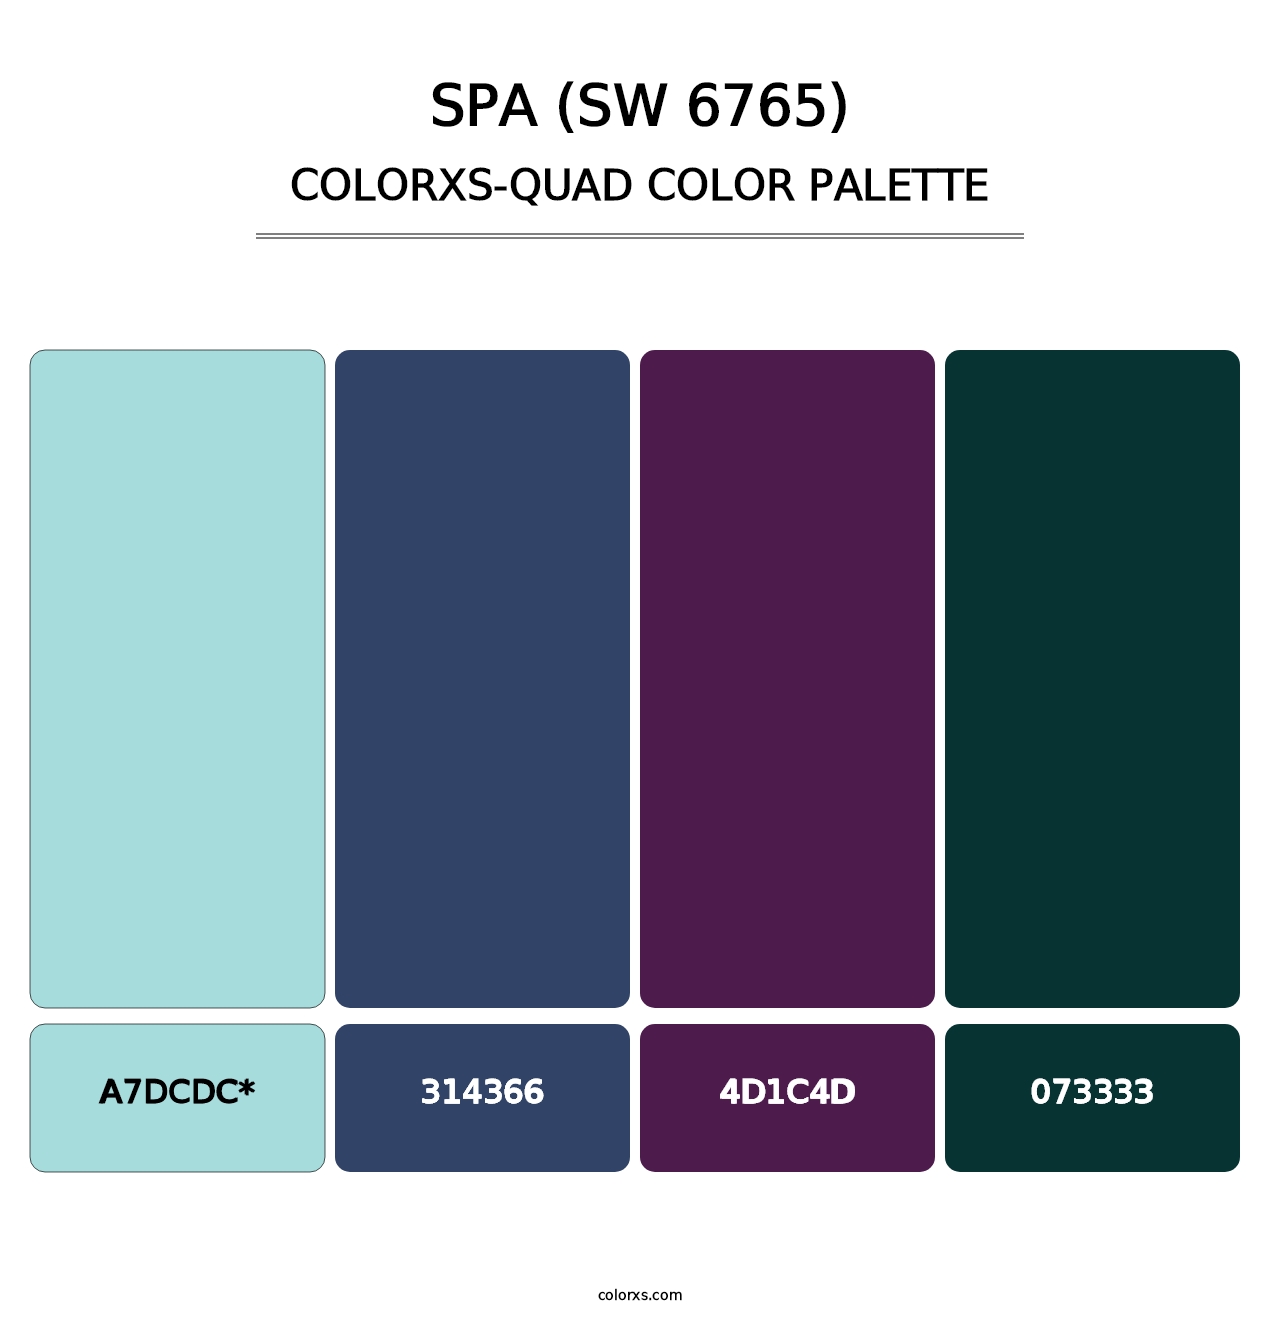 Spa (SW 6765) - Colorxs Quad Palette